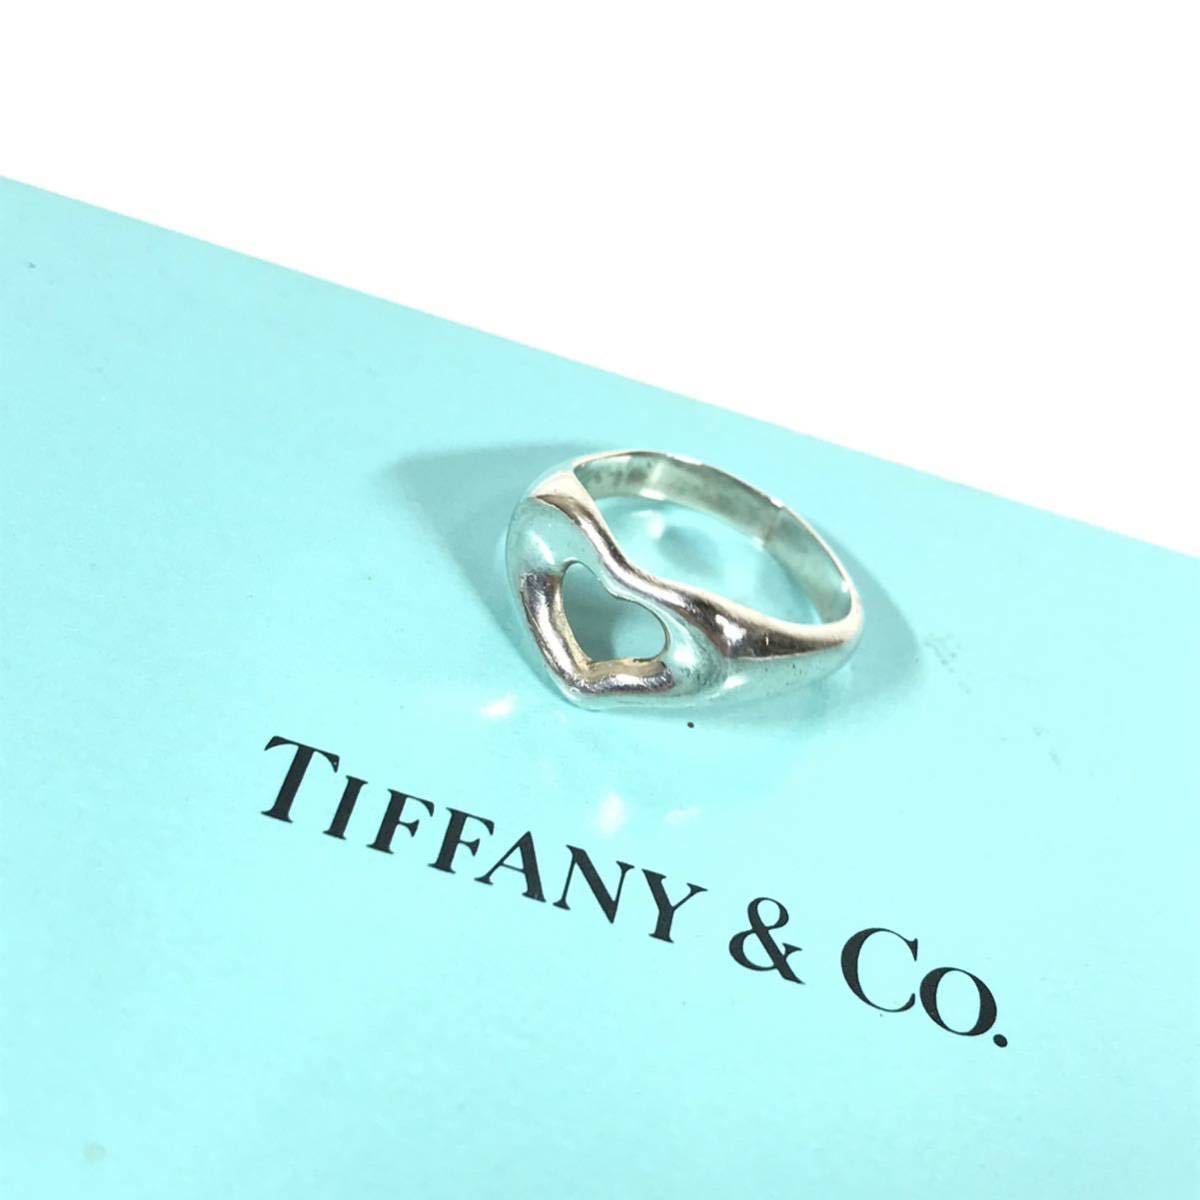 【ティファニー】本物 TIFFANY&Co. 指輪 オープンハート シルバー925 サイズ8号 リング 女性用 レディース アクセサリー 送料370円の画像2